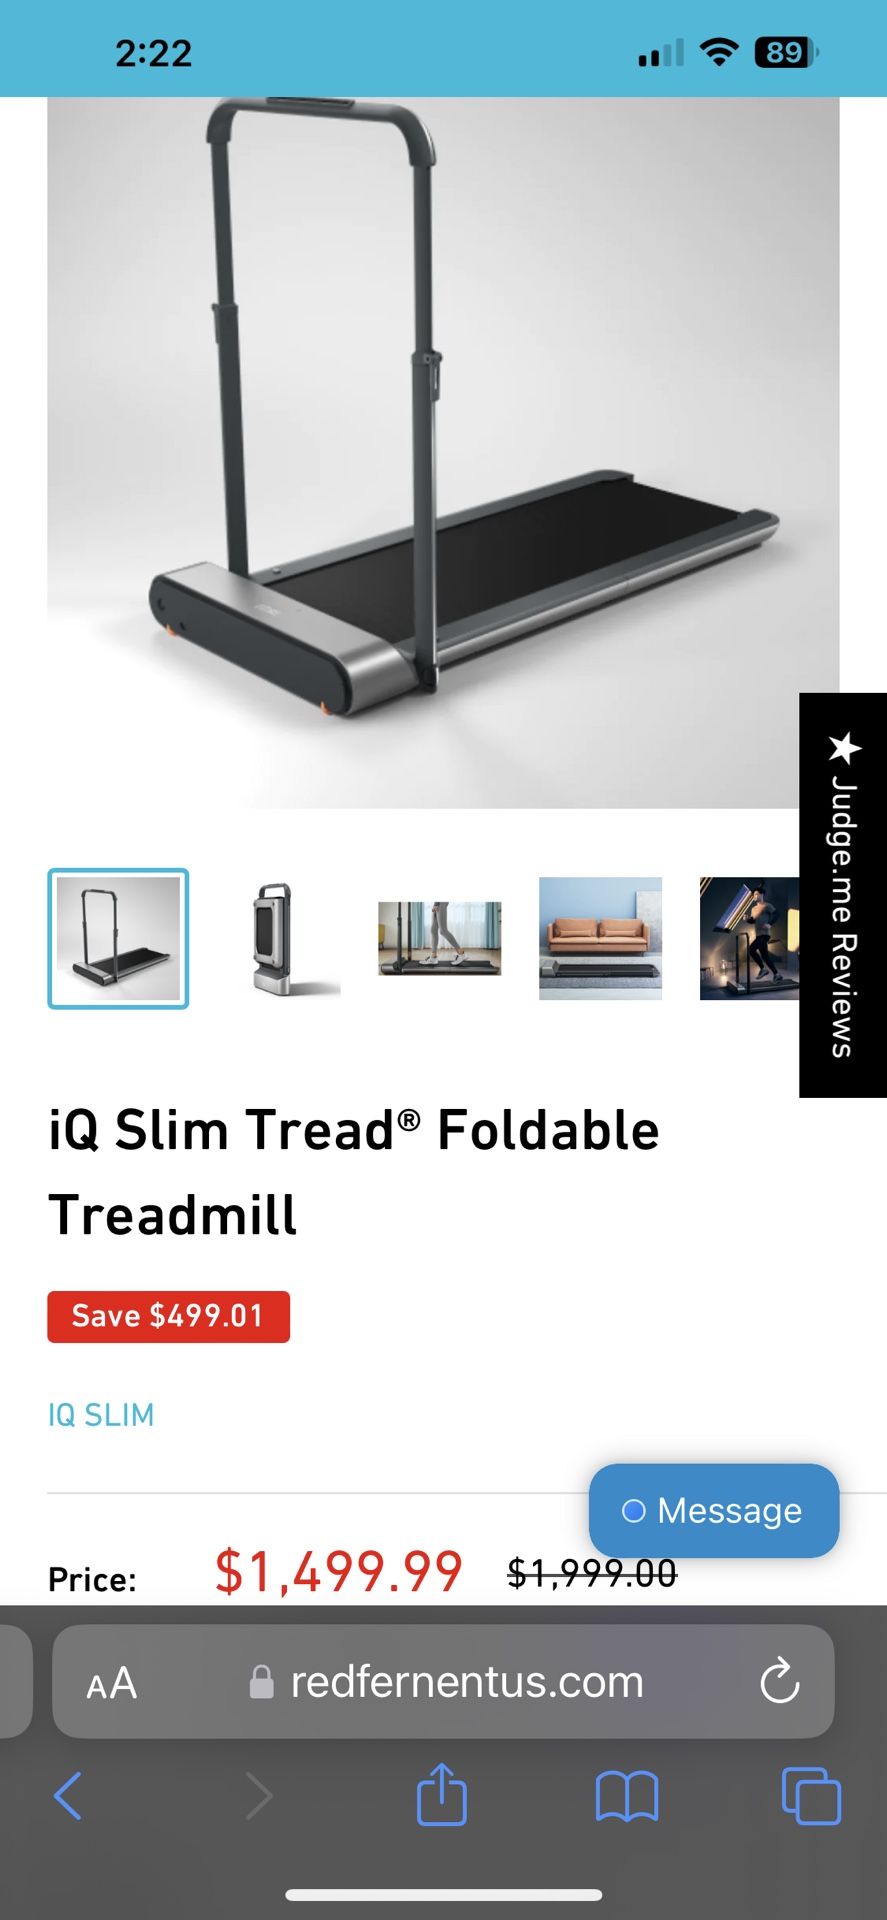 IQ Slim Tread foldable treadmill